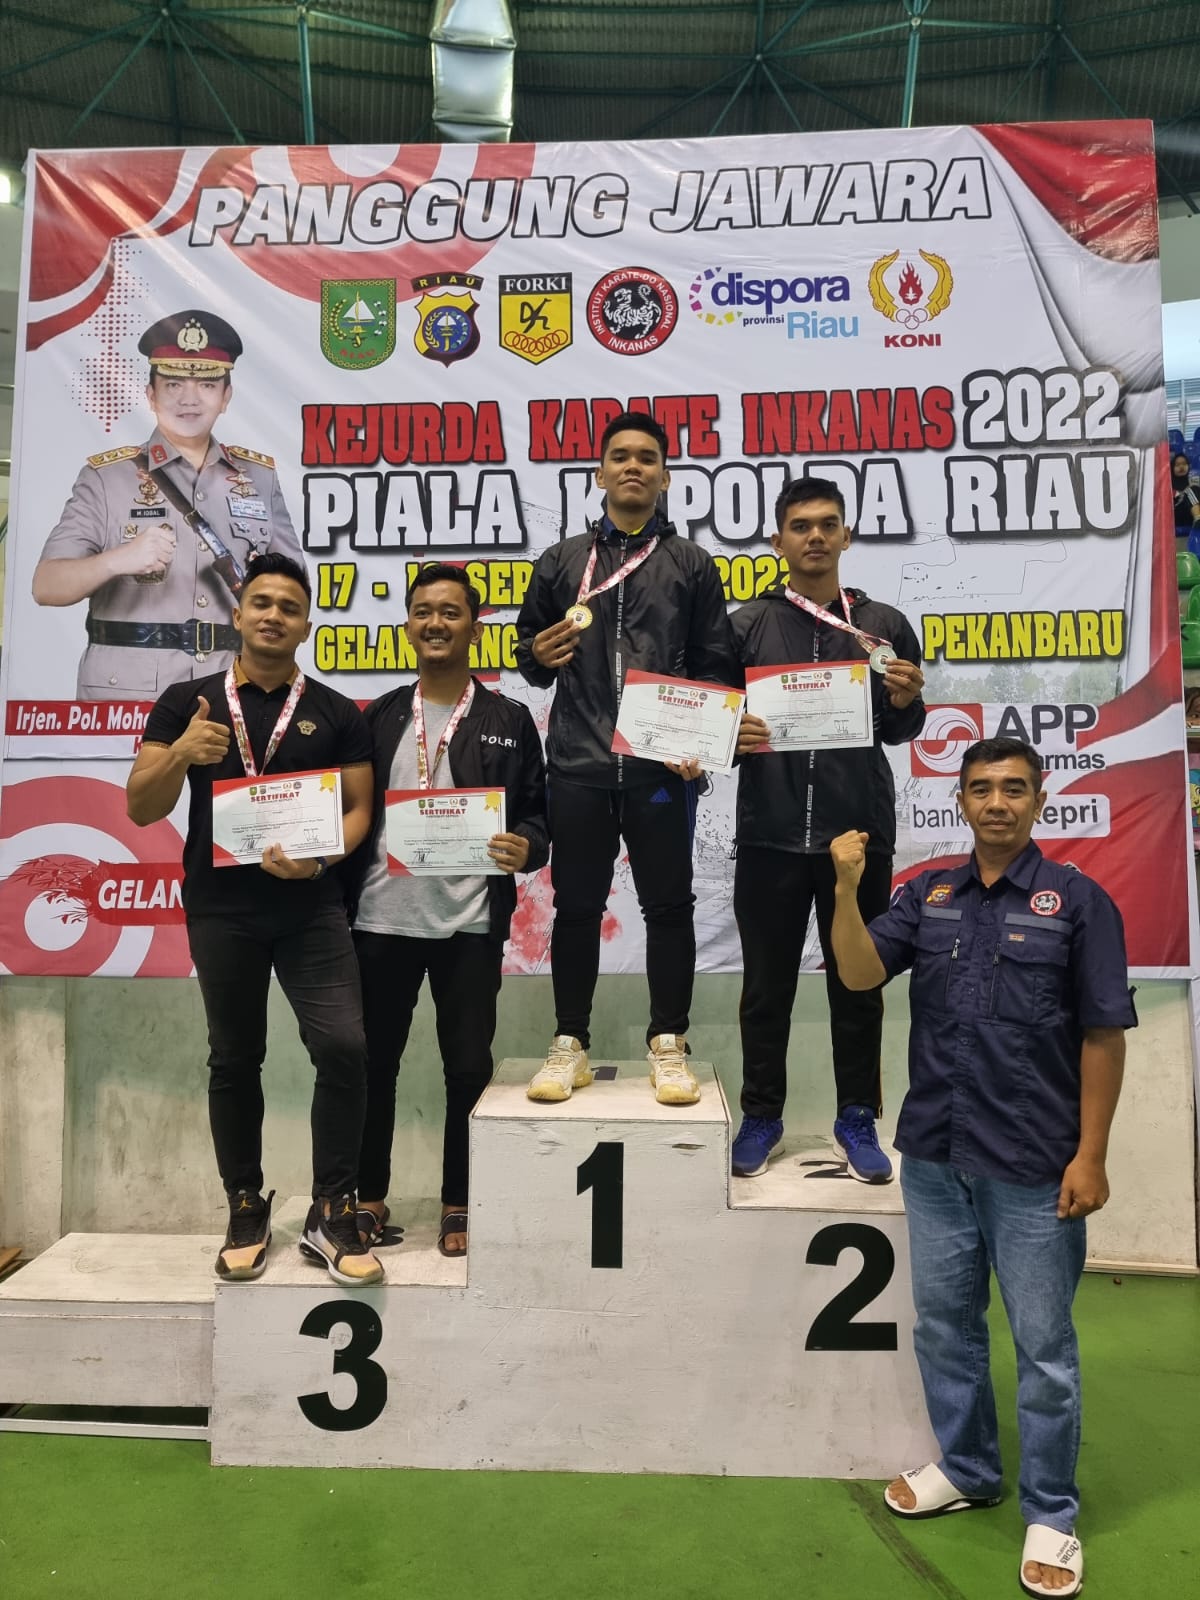 Bripda Abdurazzaq Noerfieri Ibrahim Berhasil Meraih Medali Emas Di Kerjuda Inkanas Piala Kapolda Riau